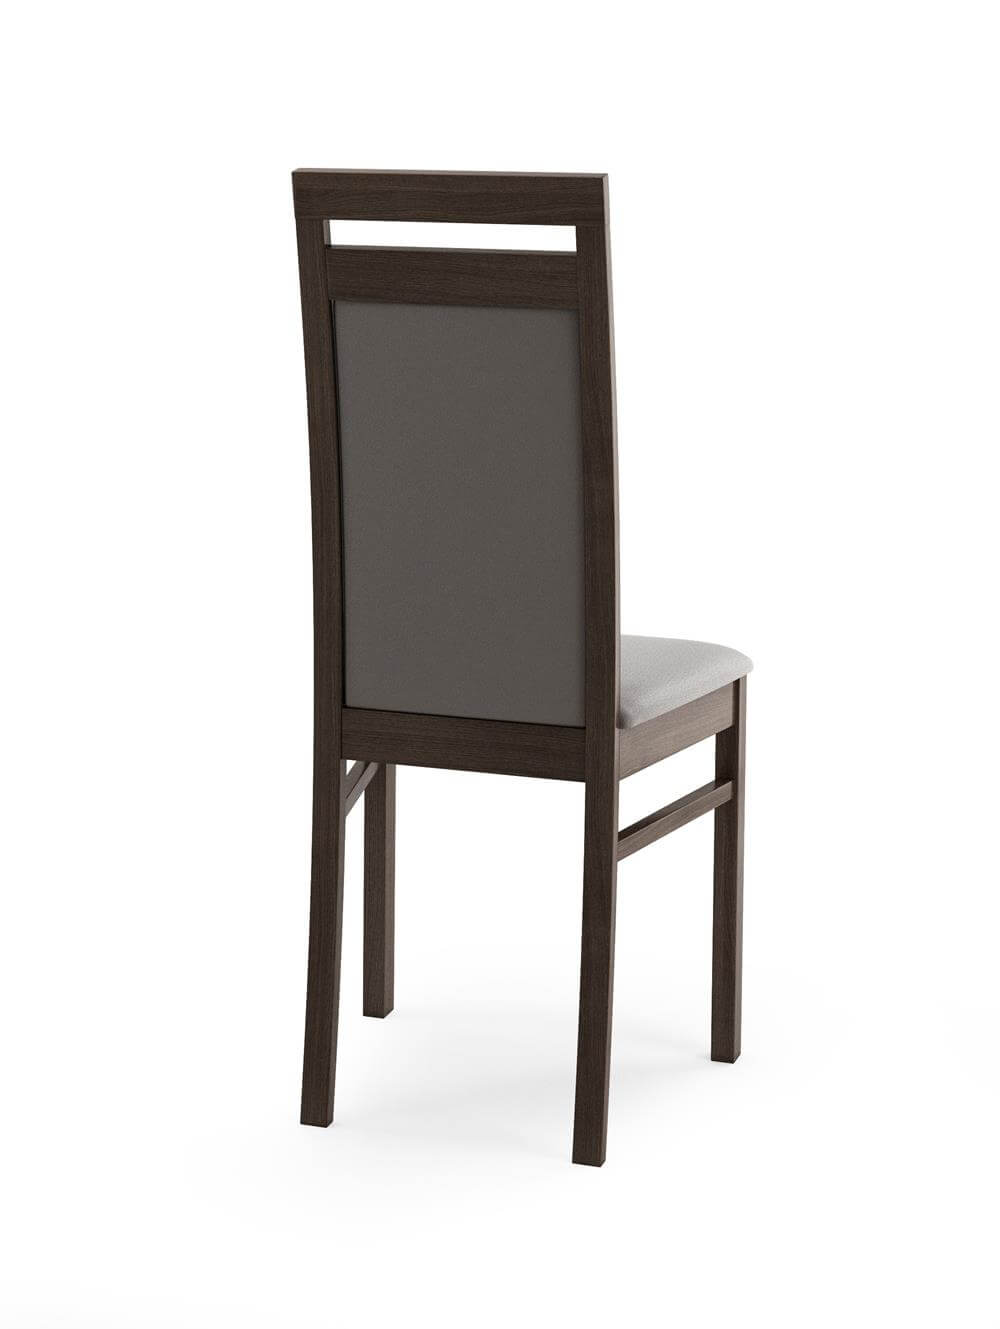 Tył wygodnego krzesła do salonu Iza